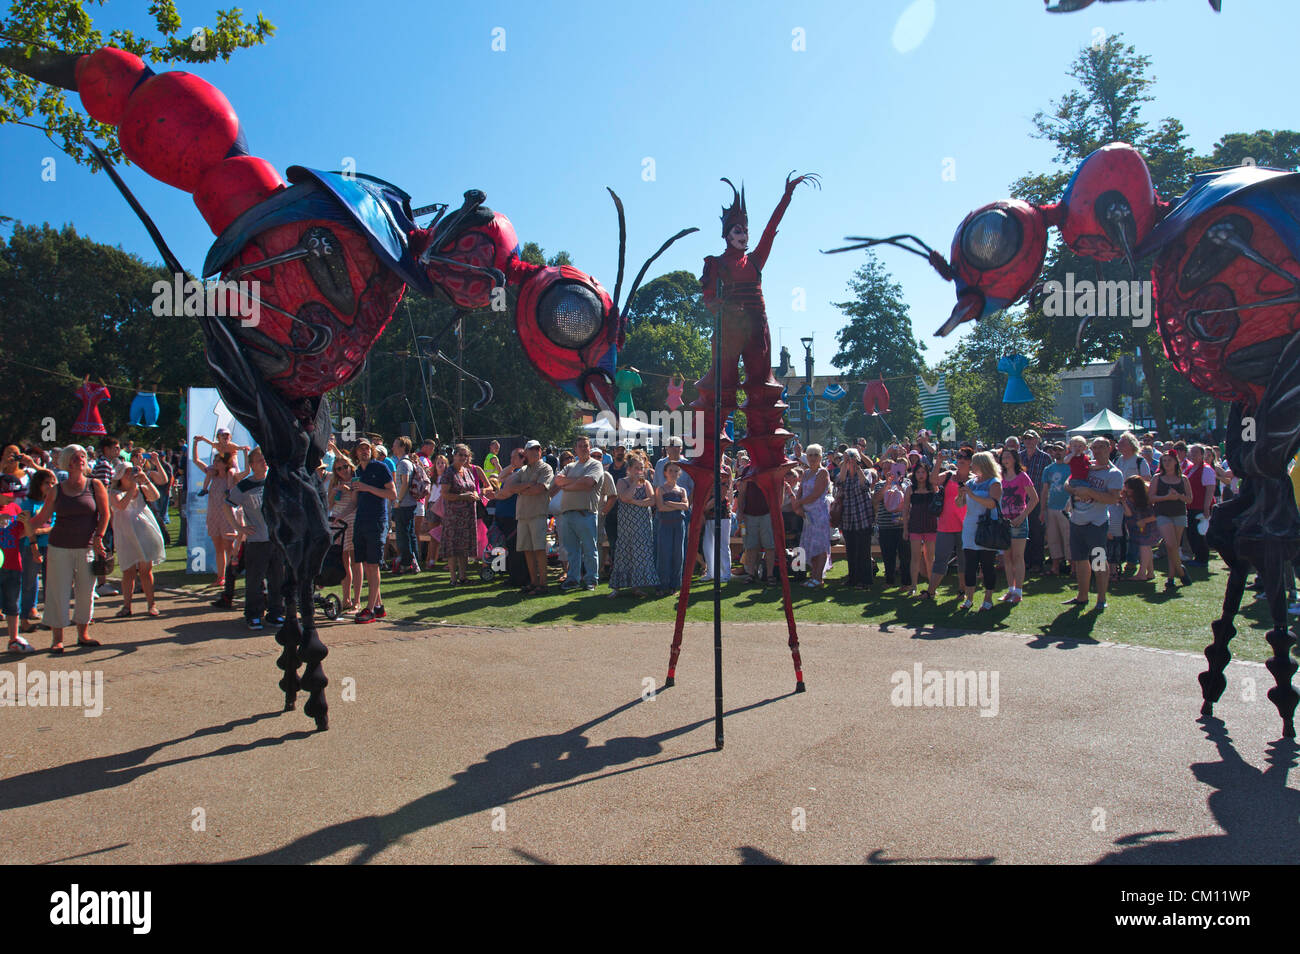 Riesenameisen auf dem großen Yarmouth-Festival. Holländische Street Arts Company, gigantische Pfahlwanderinsekten, Norfolk, Vereinigtes Königreich Stockfoto